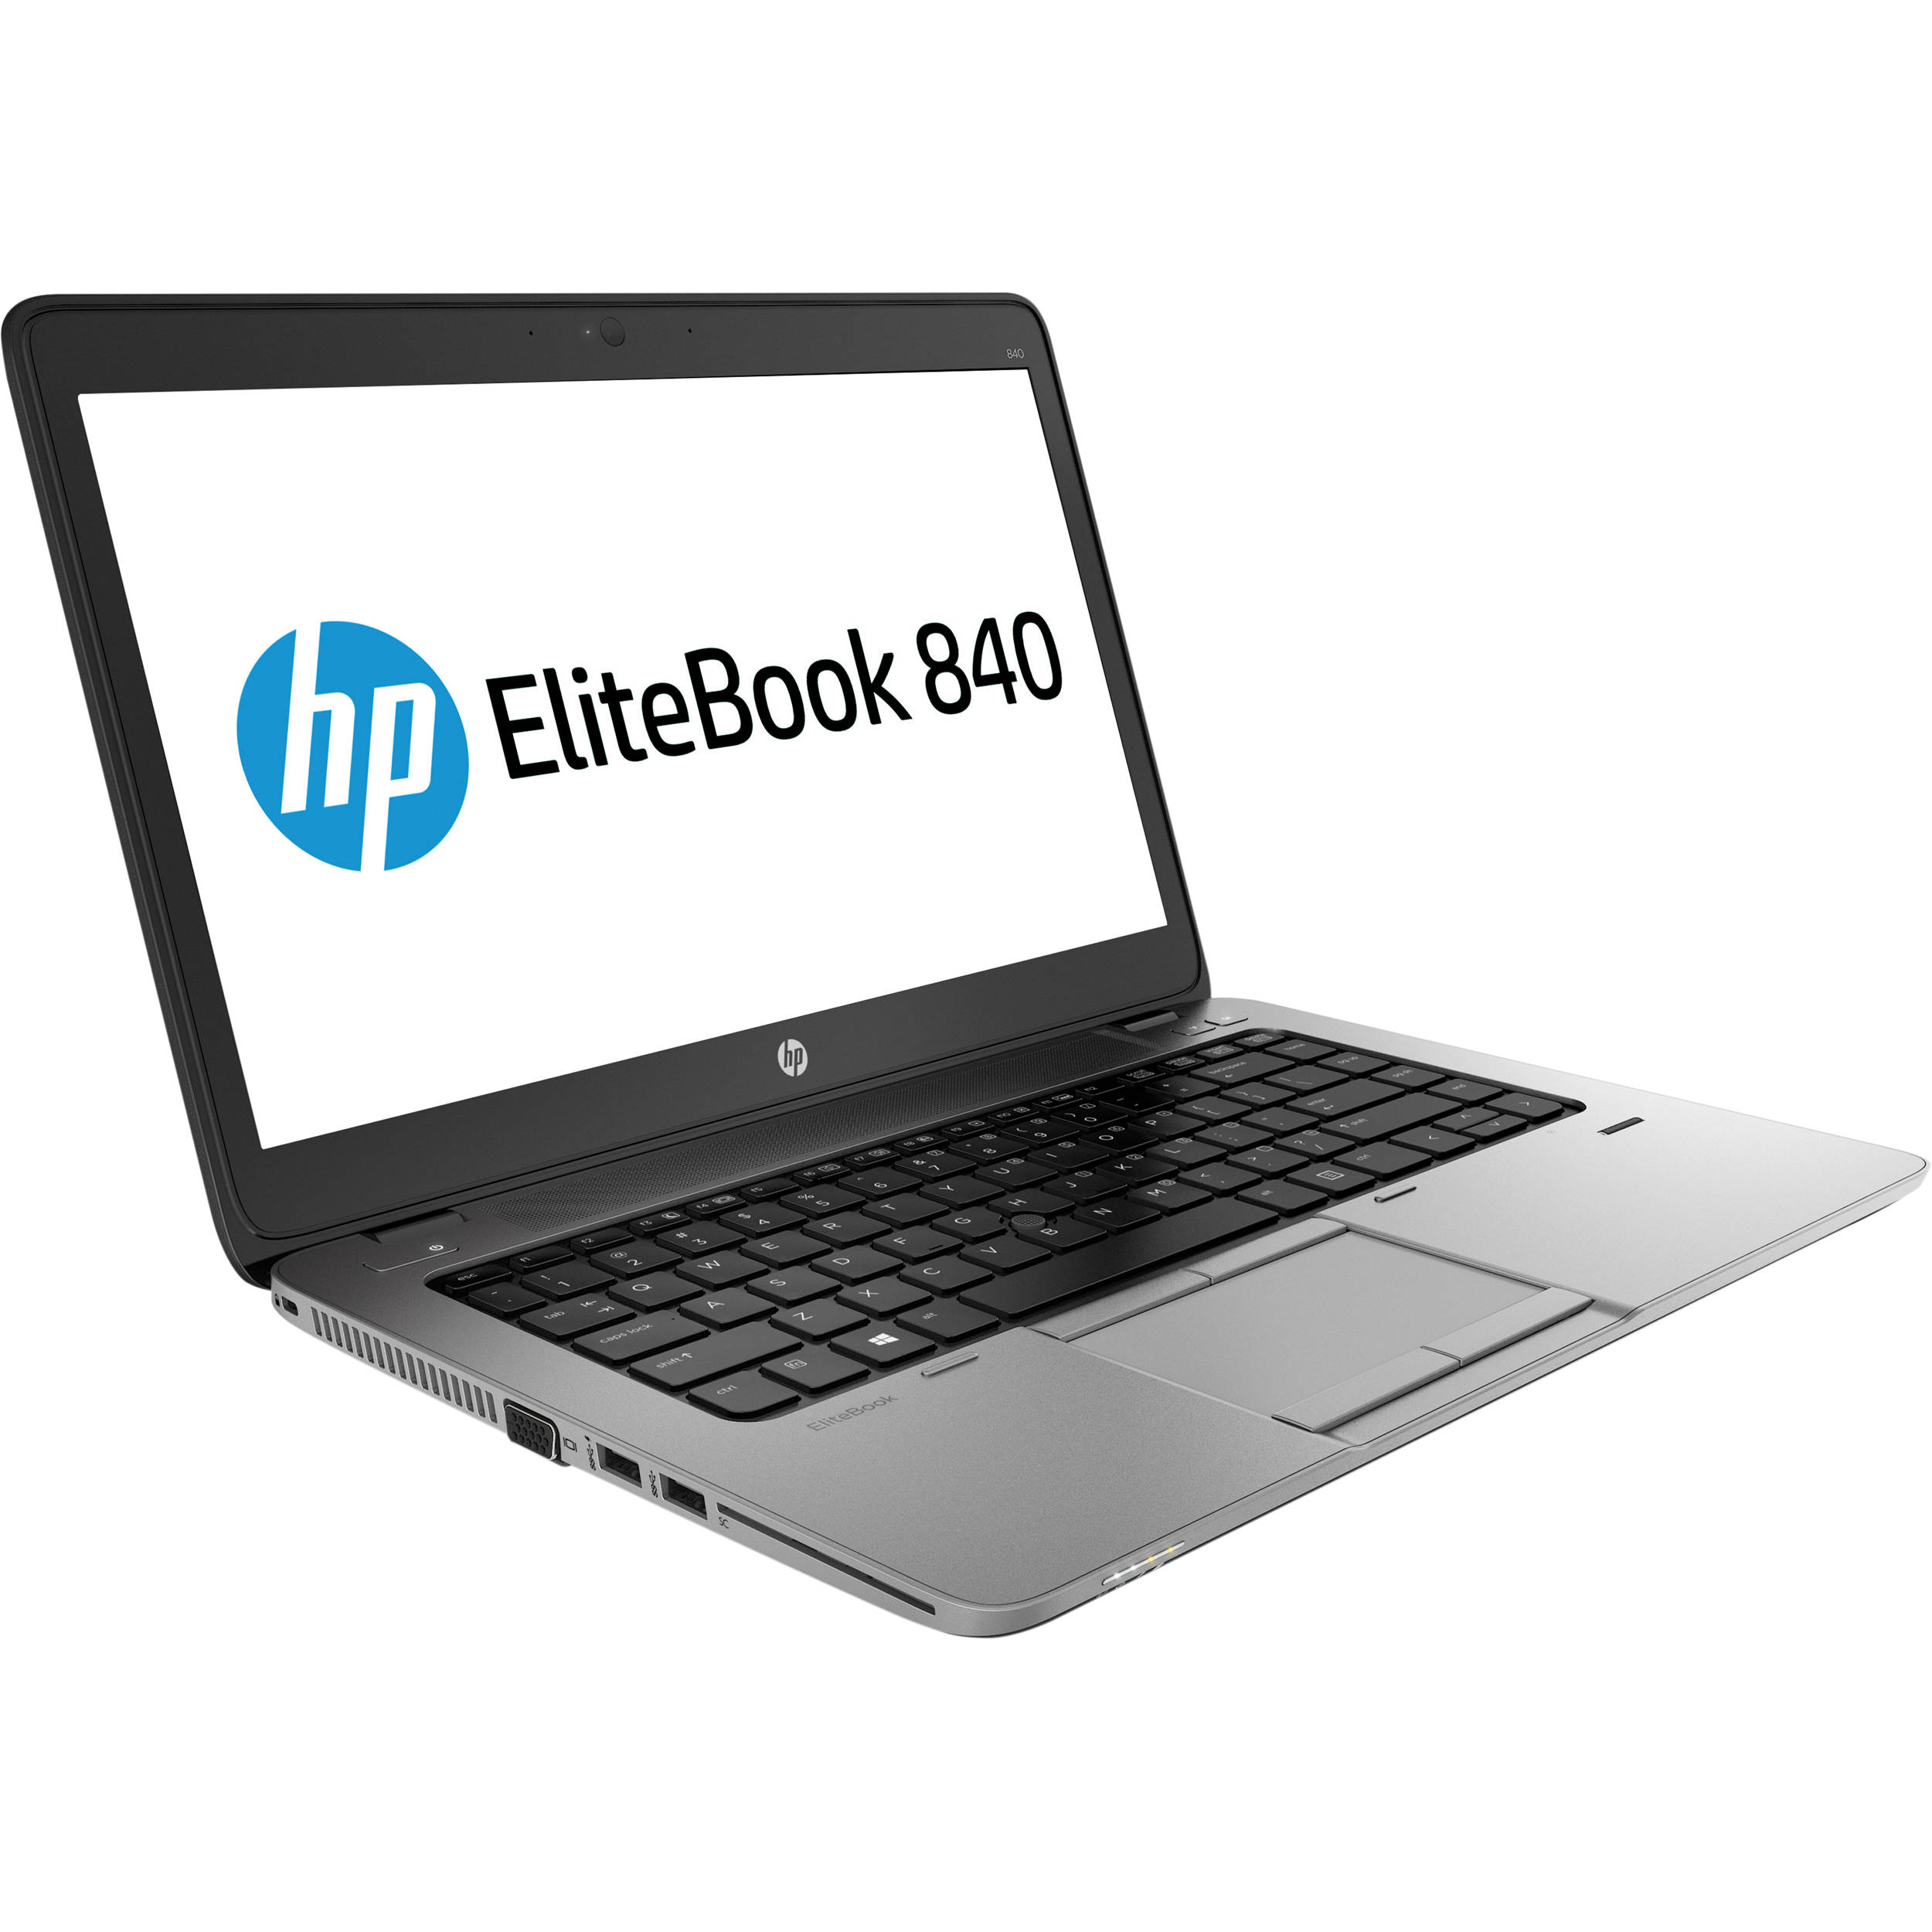 HP EliteBook 840 Specs